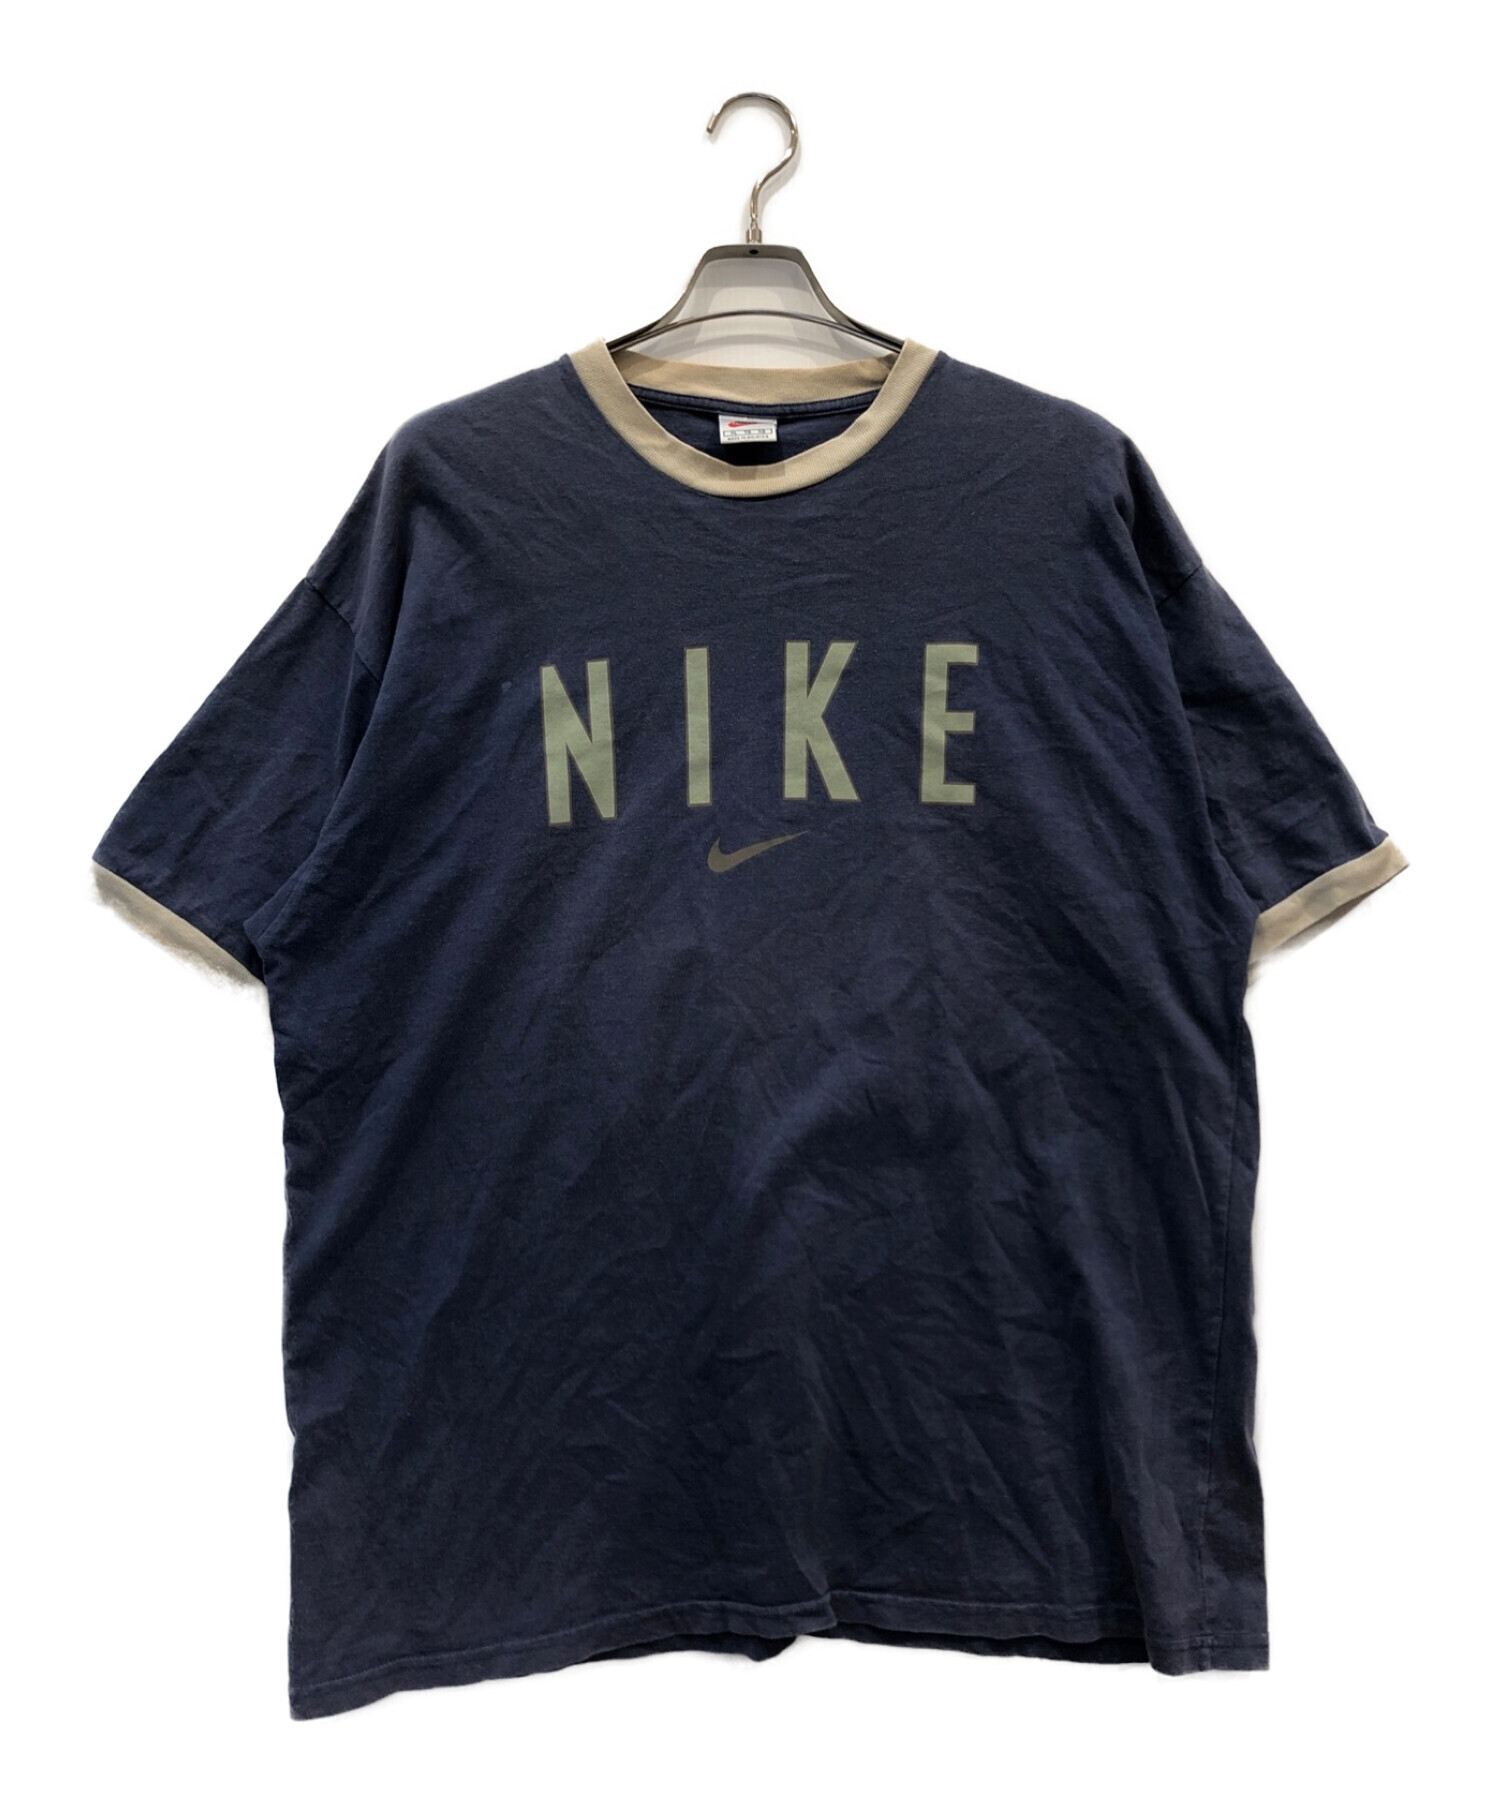 中古・古着通販】NIKE (ナイキ) 90sデカロゴリンガーTシャツ ネイビー 